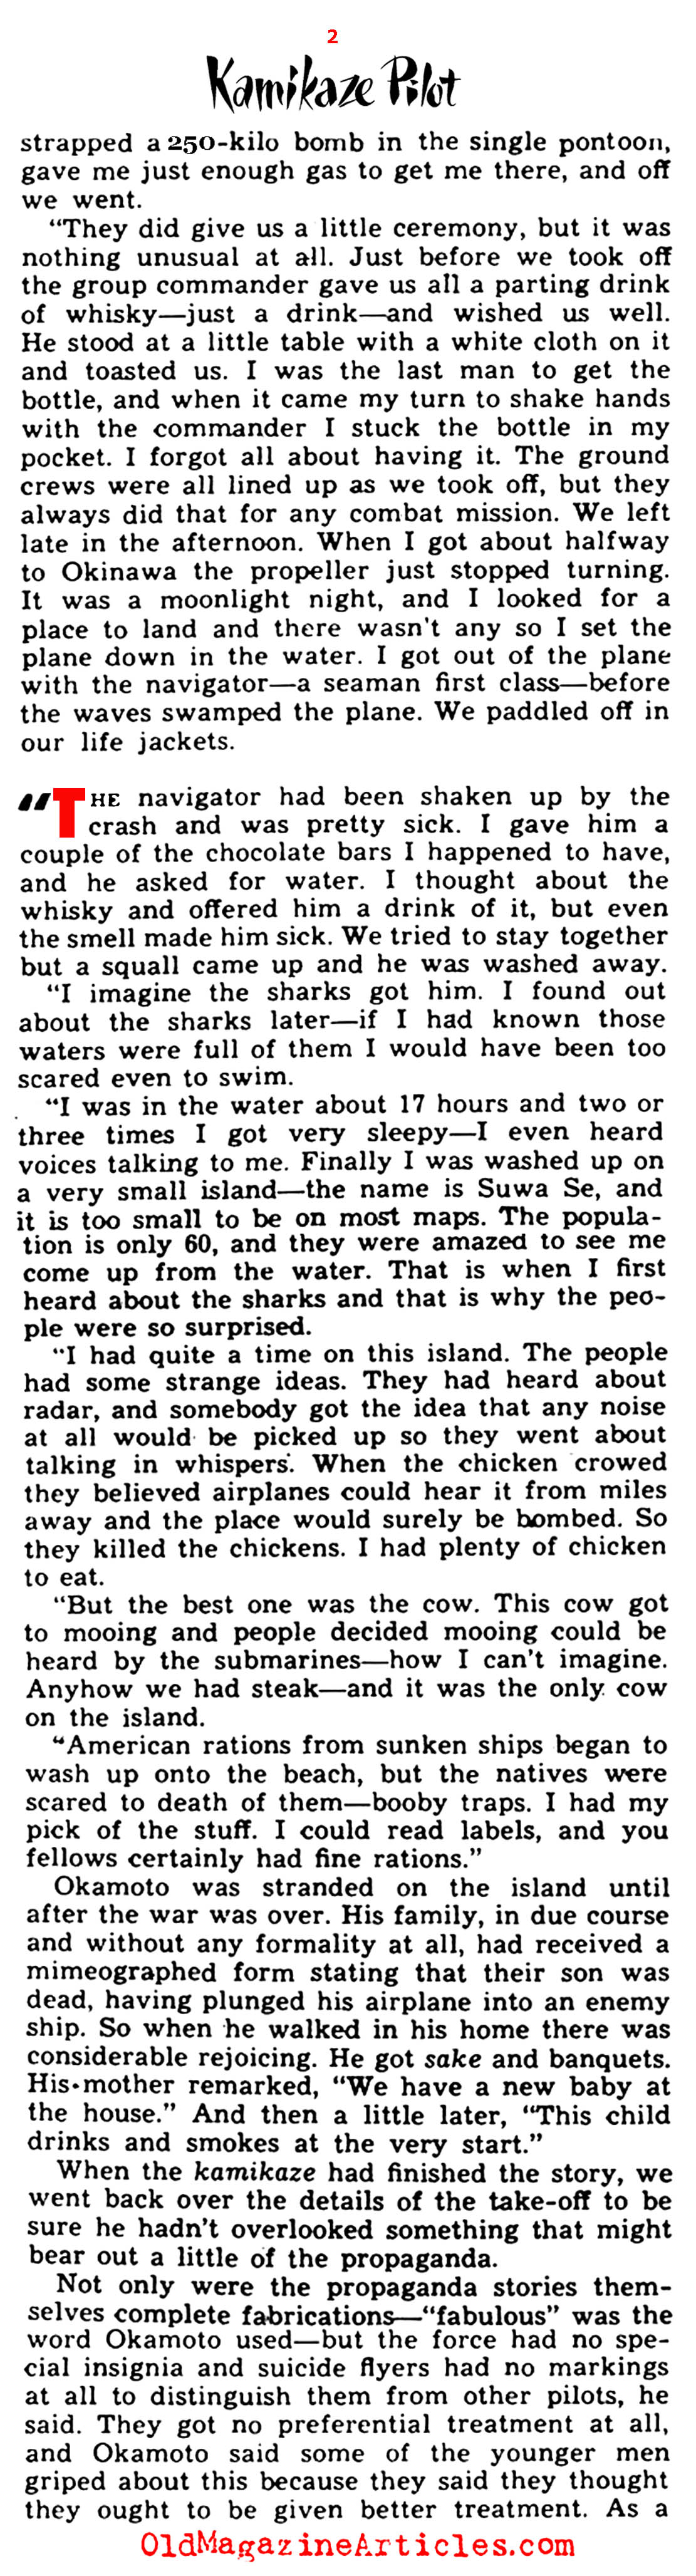 An Interview with a Kamikaze Pilot  (Yank Magazine, 1945)